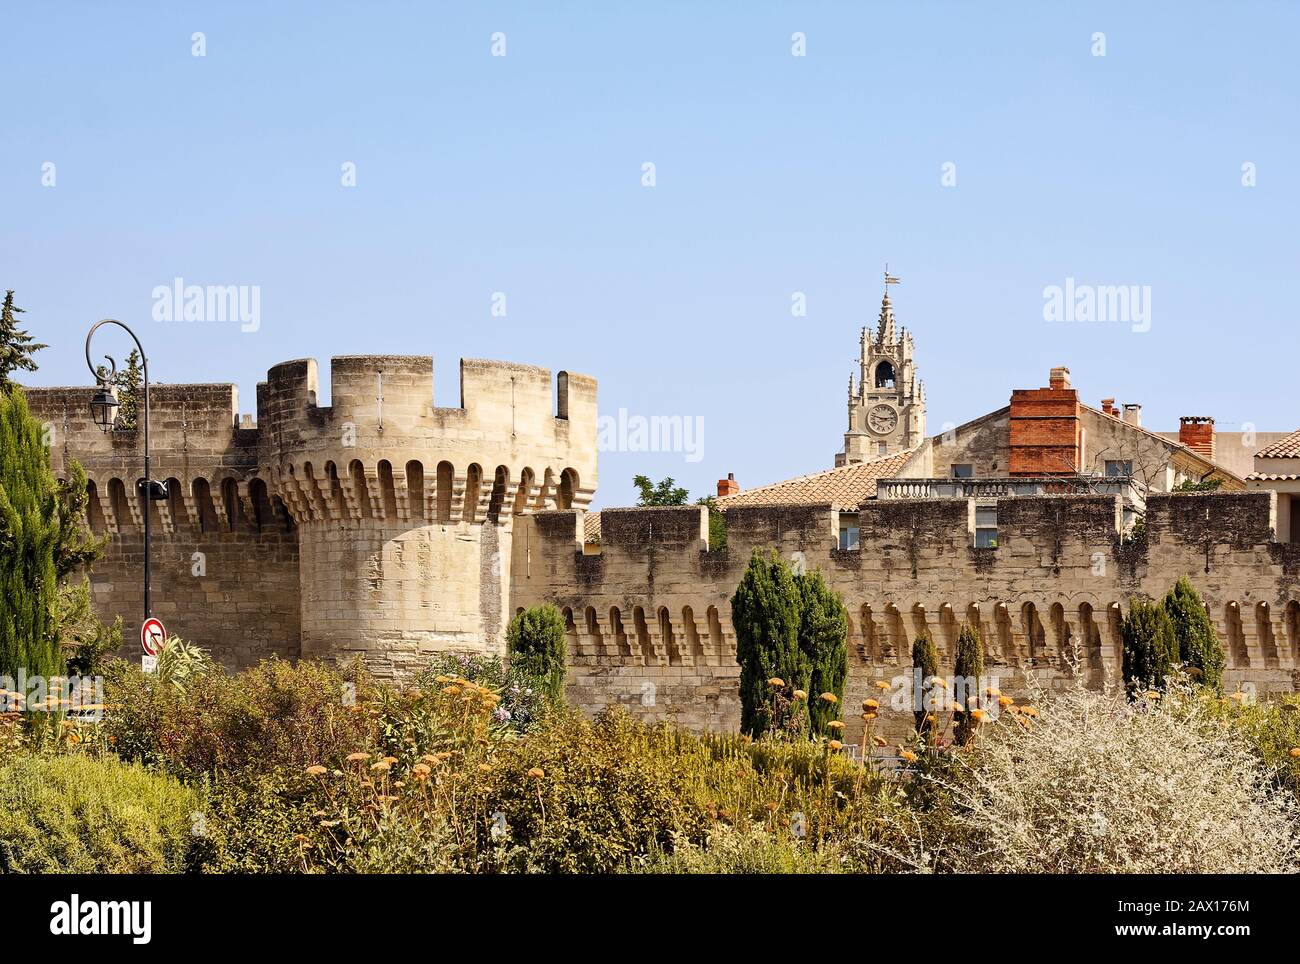 Alte Stadtmauer, Stein, crenelliert, Vegetation, verzierter Uhrturm, Provence, Avignon; Frankreich; Sommer; horizontal Stockfoto